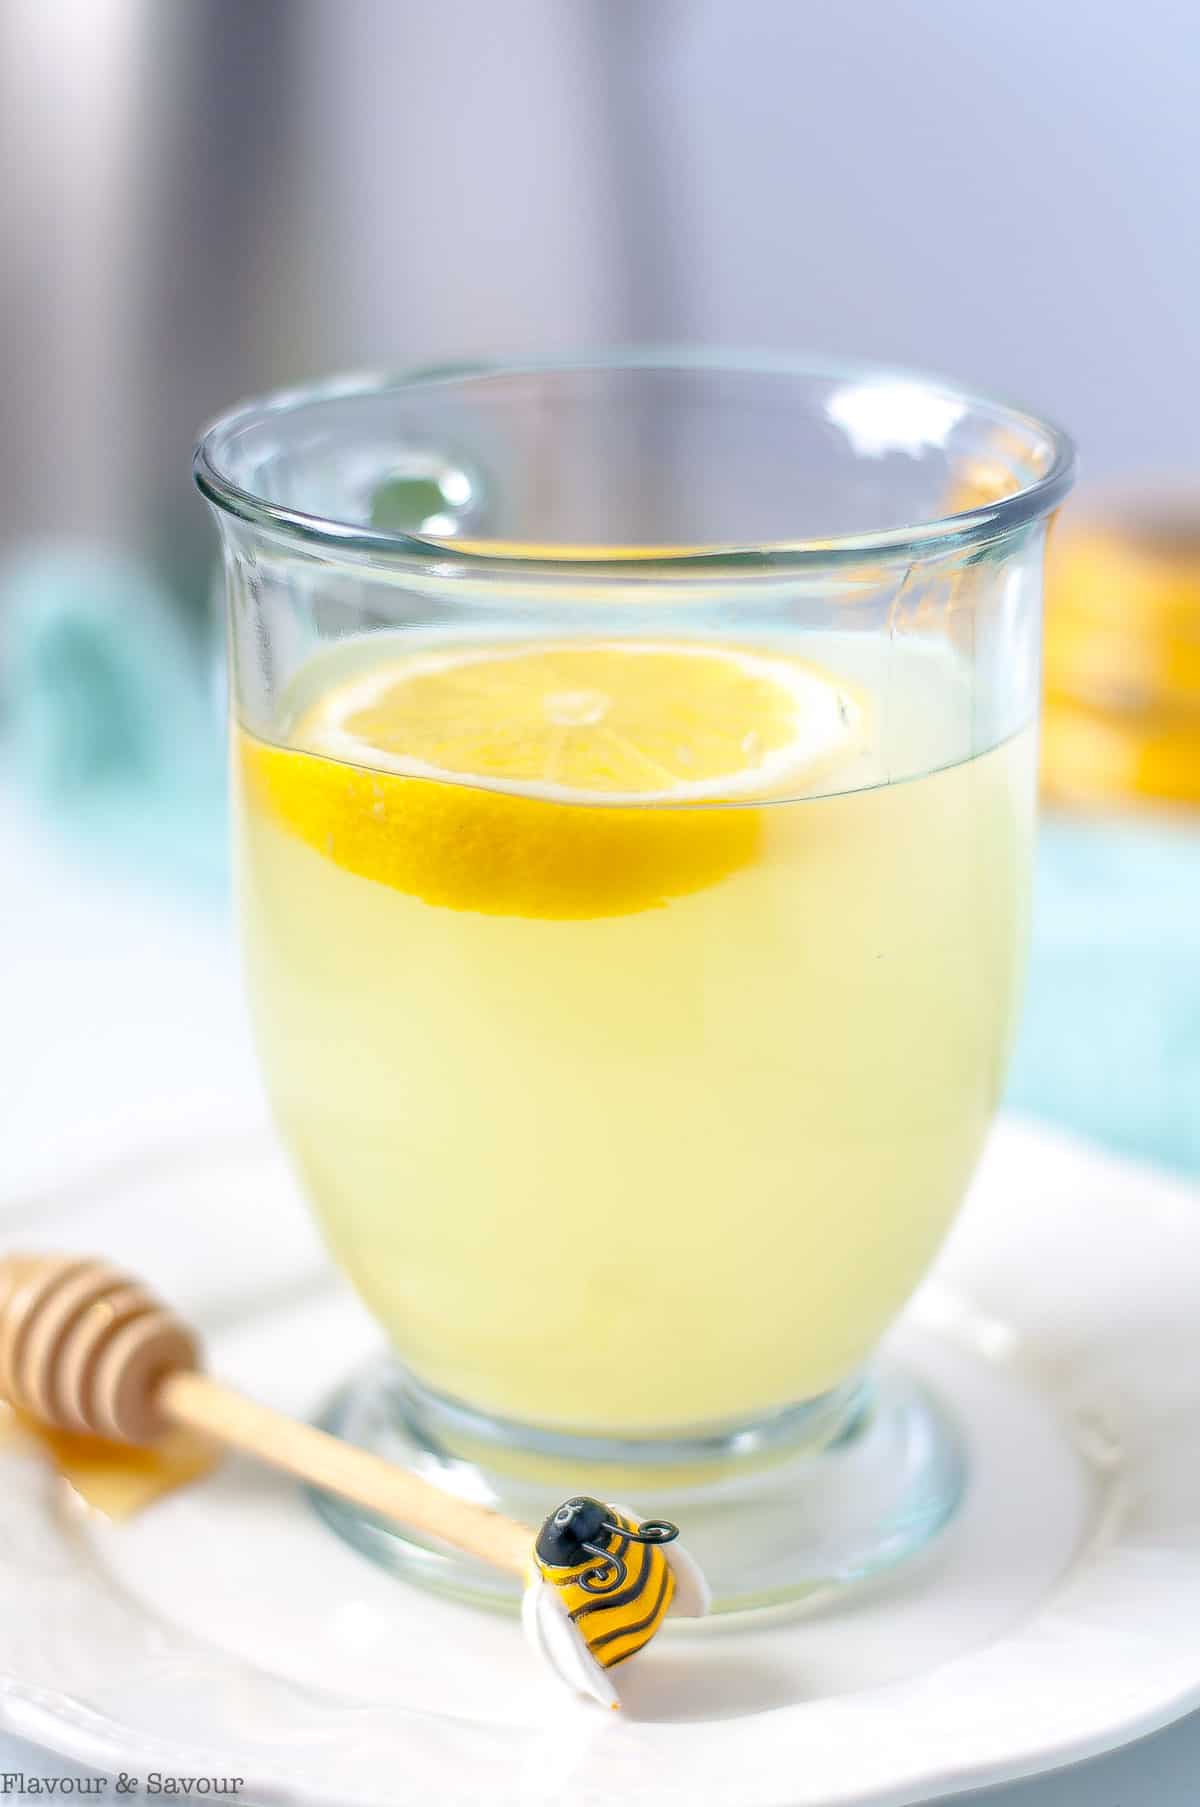 A glass mug with lemon ginger tea and a slice of lemon.